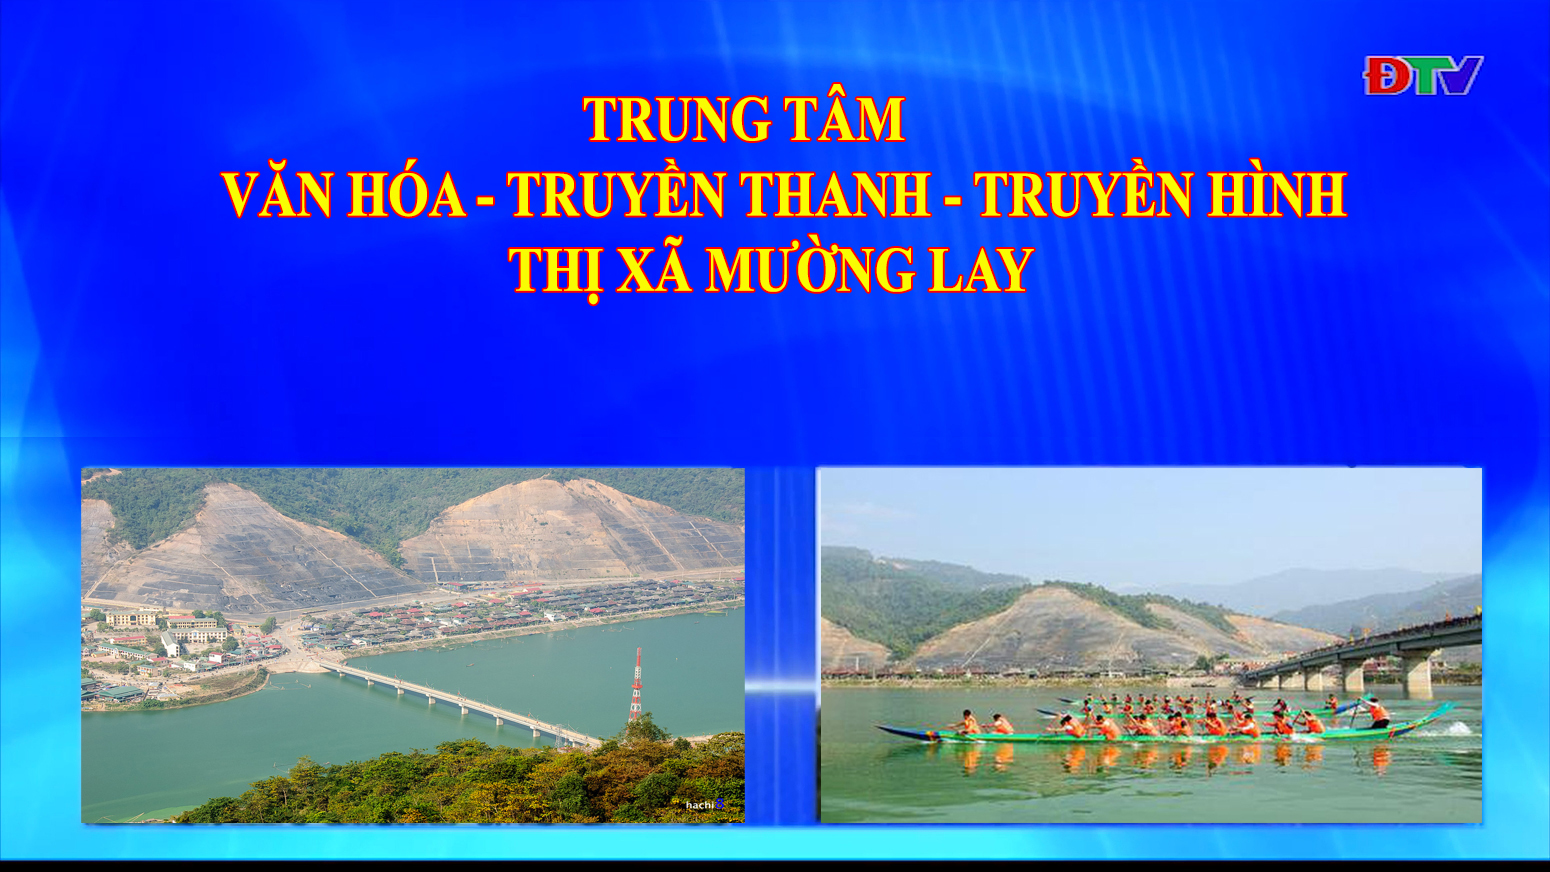 Trung tâm VH-TTTH thị xã Mường Lay (Ngày 20-11-2020)